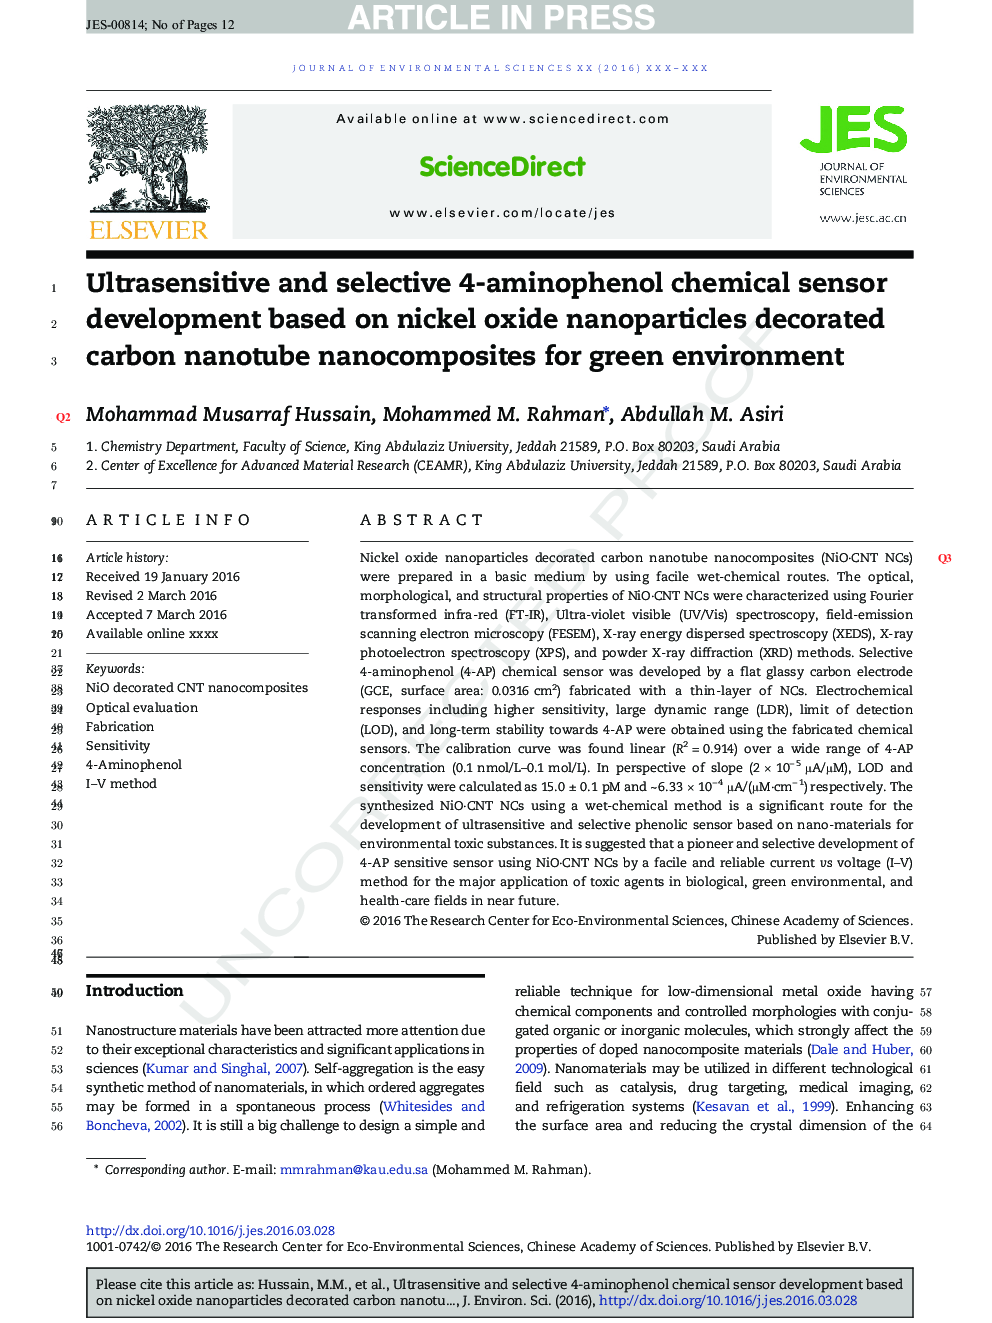 سنسور شیمیایی حساسیت و انتخابی 4-آمینوفنول بر اساس نانوذرات اکسید نیکل نانو کامپوزیتی نانولوله کربنی تزئینی برای محیط سبز 